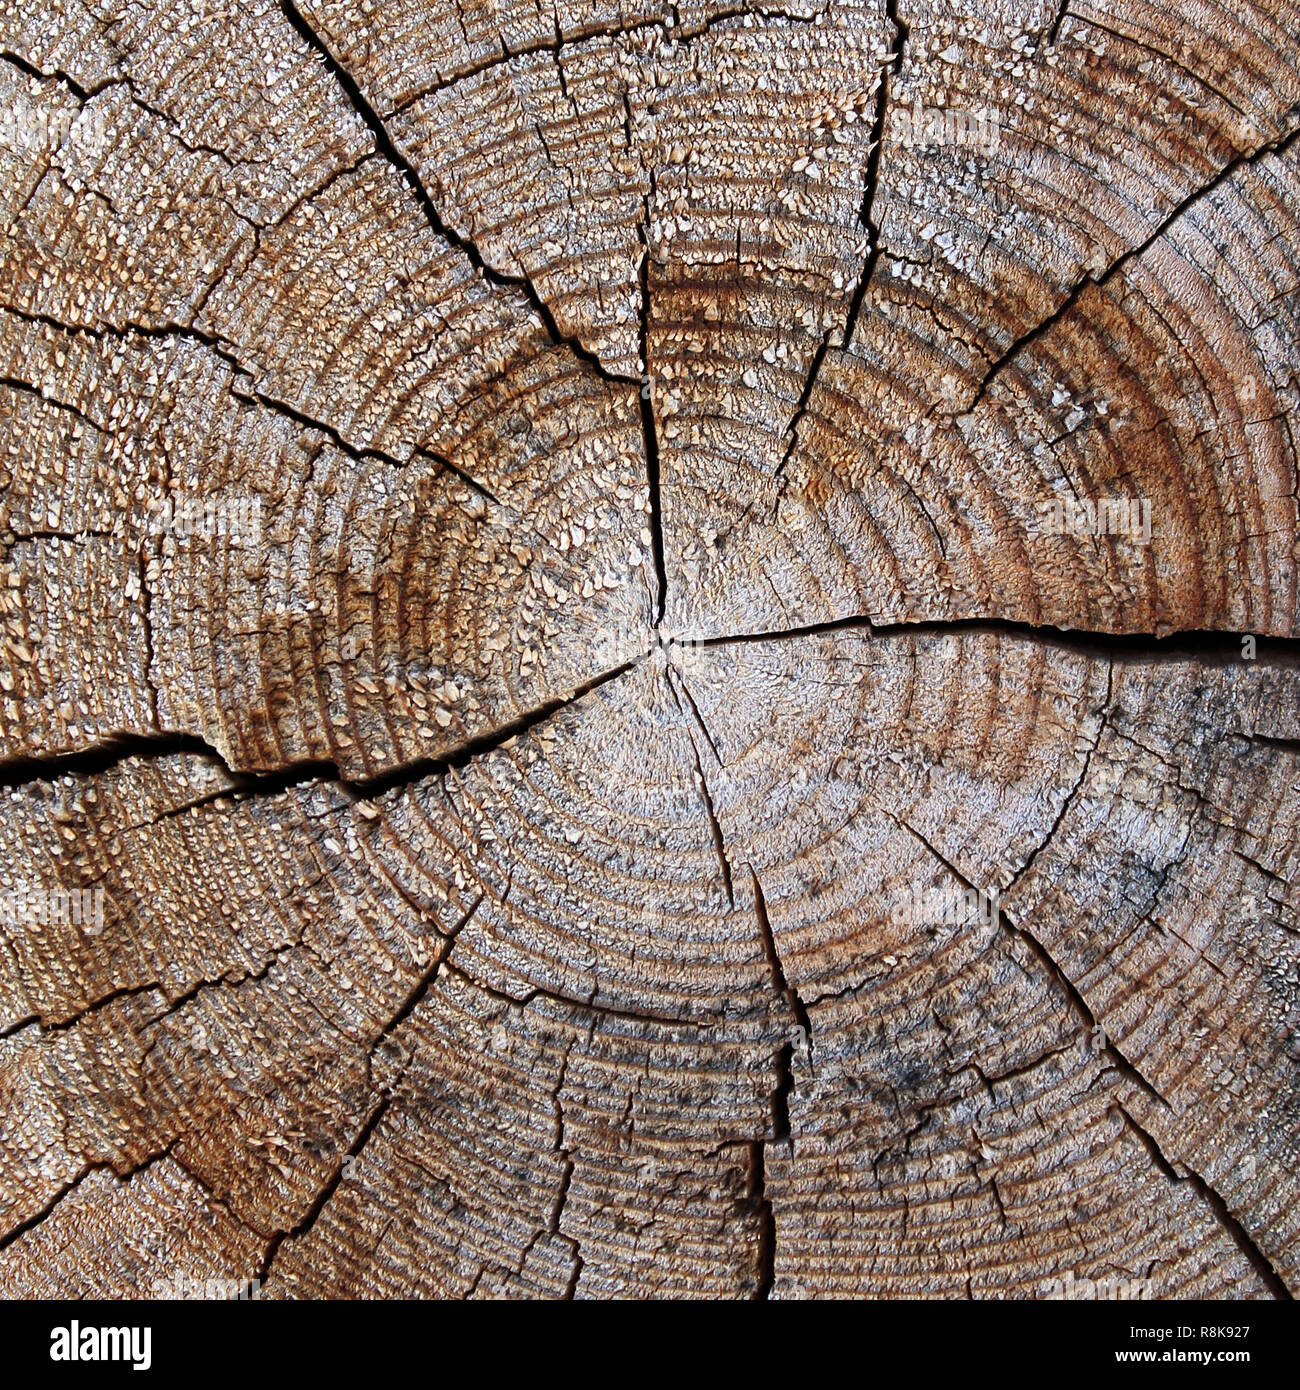 Vân gỗ tự nhiên: Chiêm ngưỡng vẻ đẹp độc đáo của vân gỗ tự nhiên với hàng loạt các hình ảnh ấn tượng. Vân gỗ tự nhiên là một trong những yếu tố khiến cho gỗ được đánh giá cao về giá trị thẩm mỹ. Hãy khám phá thêm những mẫu vân gỗ tự nhiên độc đáo tại đây.